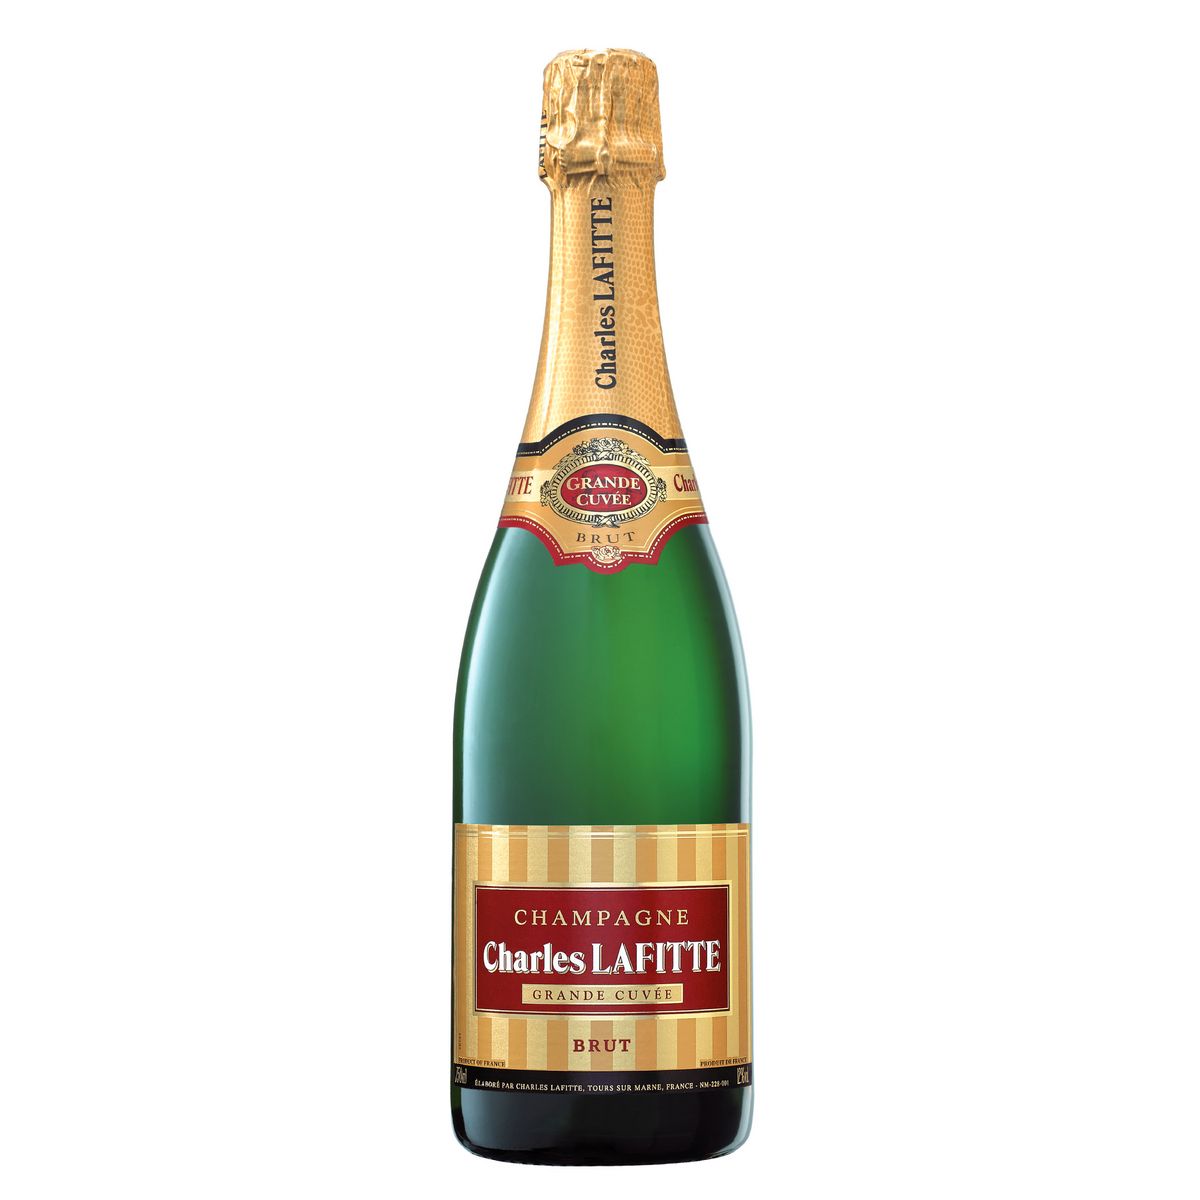 CHARLES LAFITTE AOP champagne brut grande cuvée 75cl